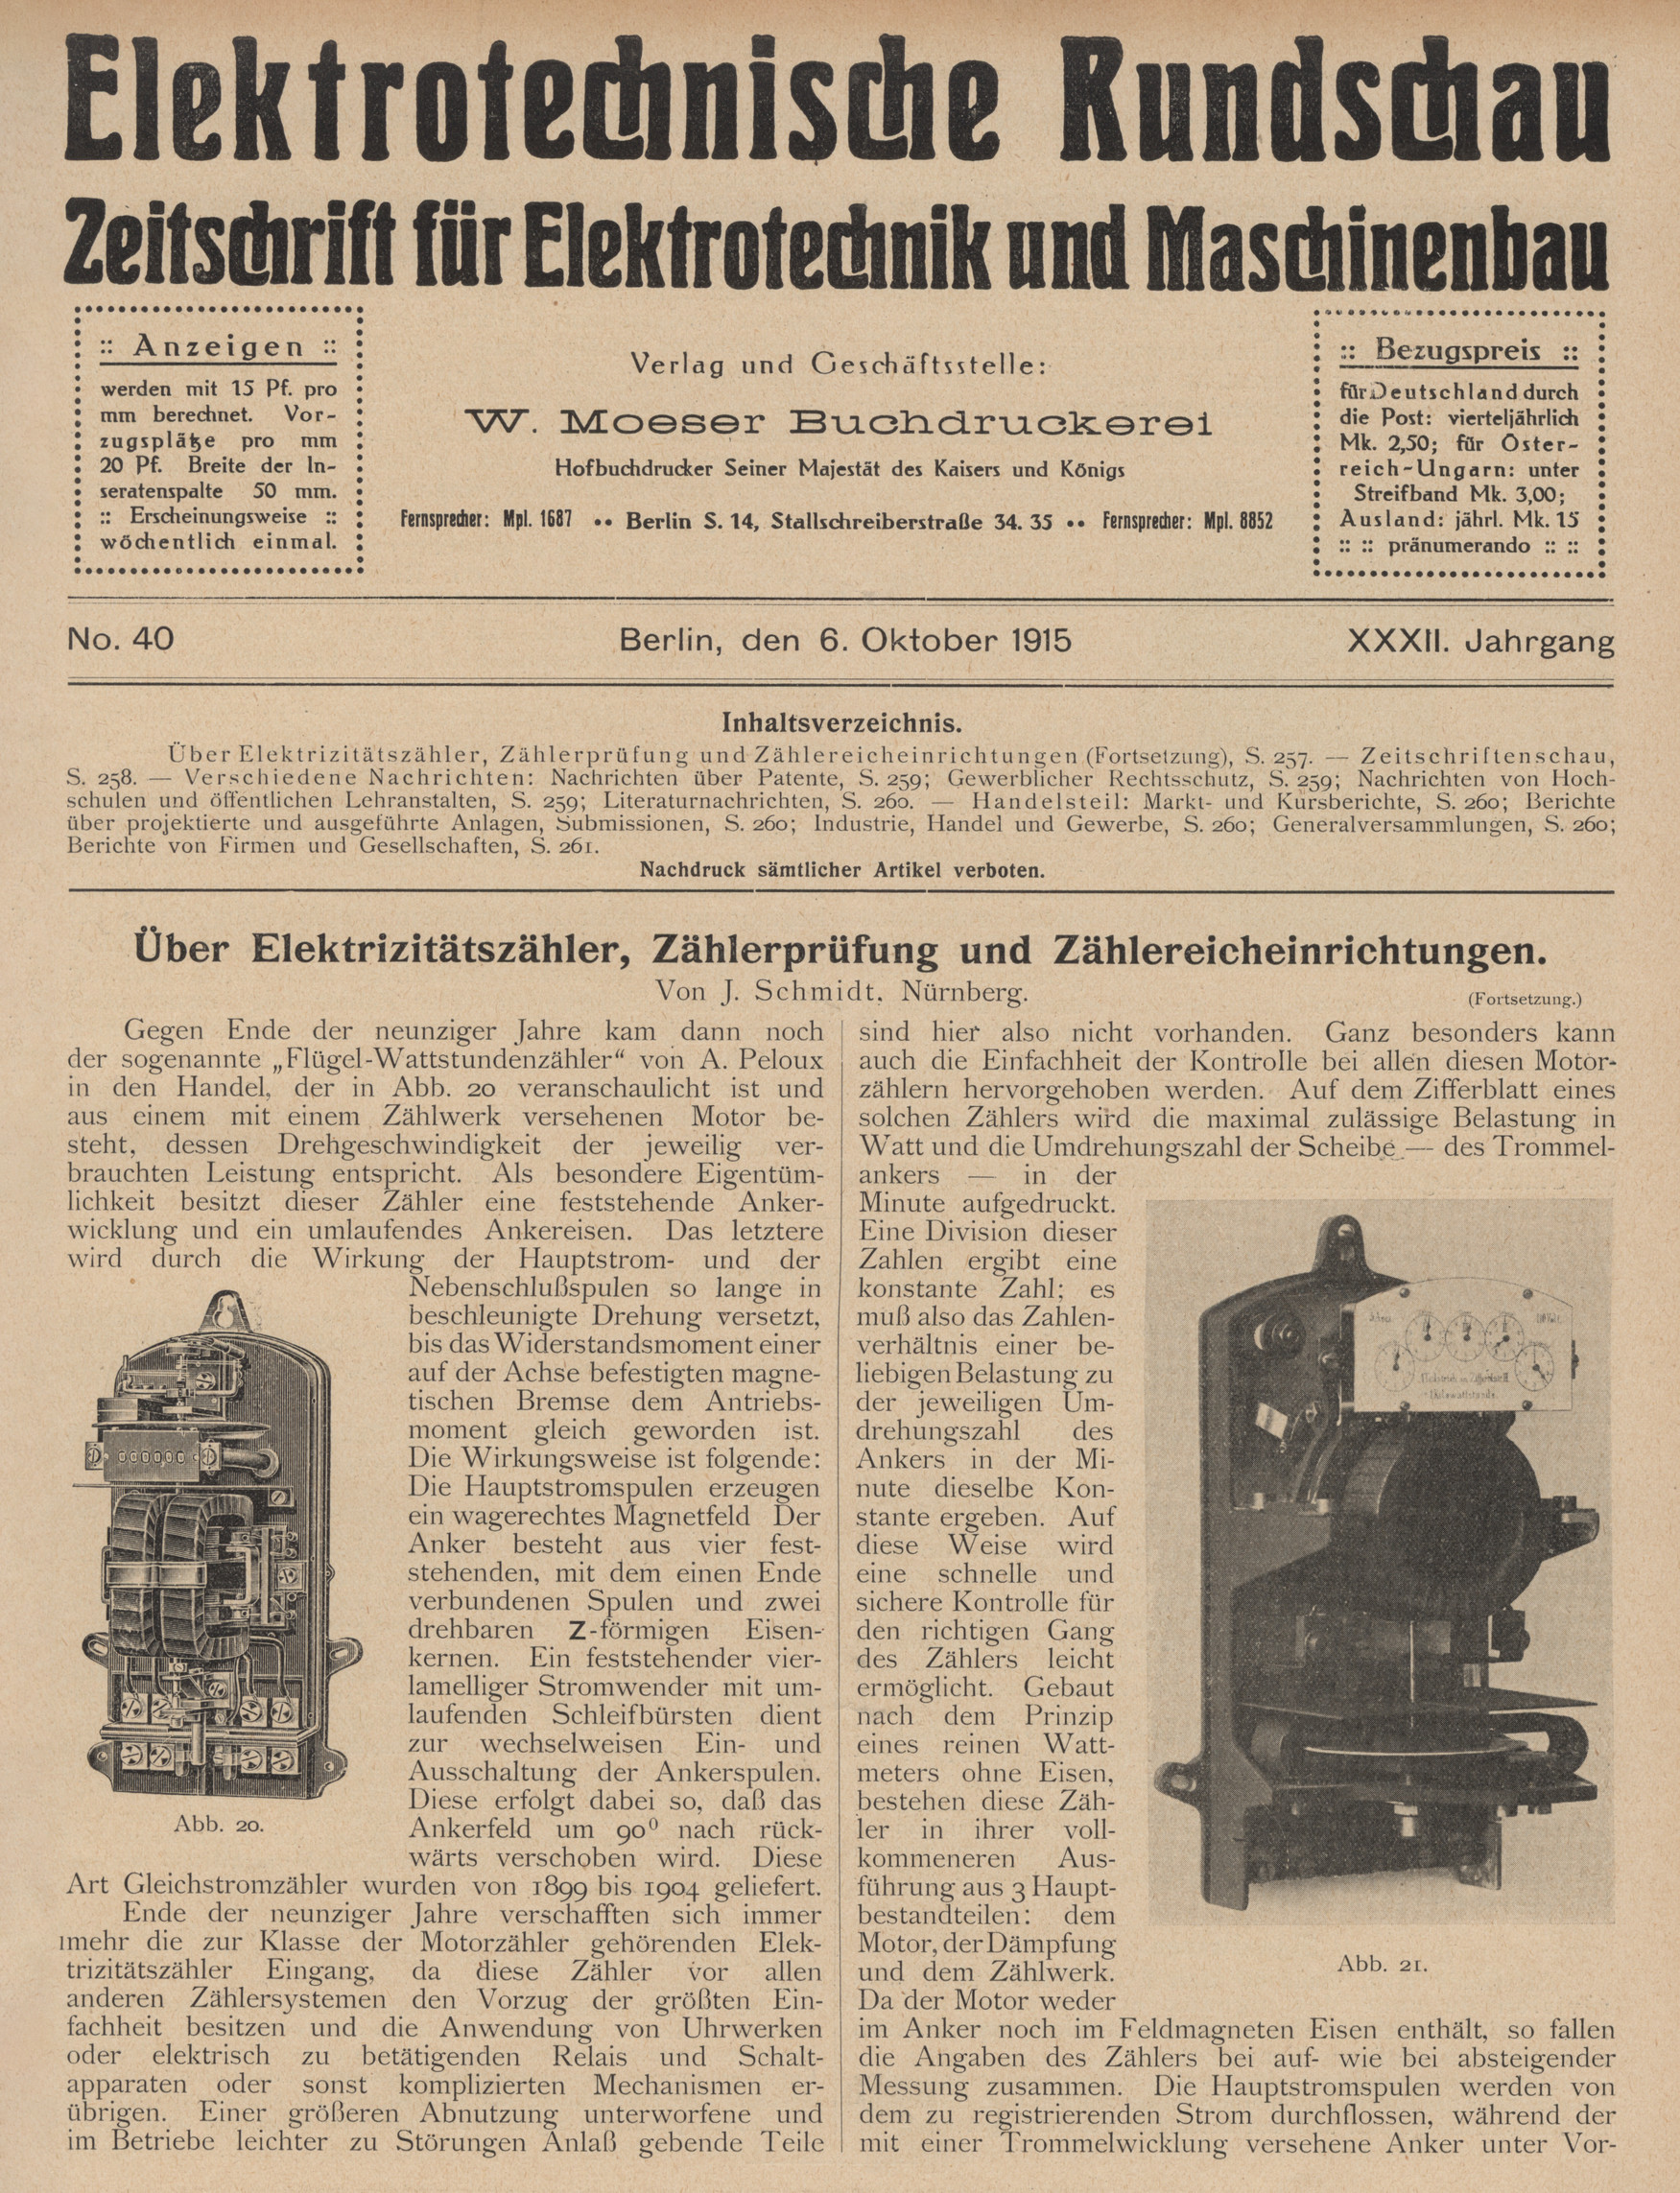 Elektrotechnische Rundschau : Zeitschrift für Elektrotechnik und Maschinenbau + Polytechnische Rundschau, No. 40, XXXII. Jahrgang